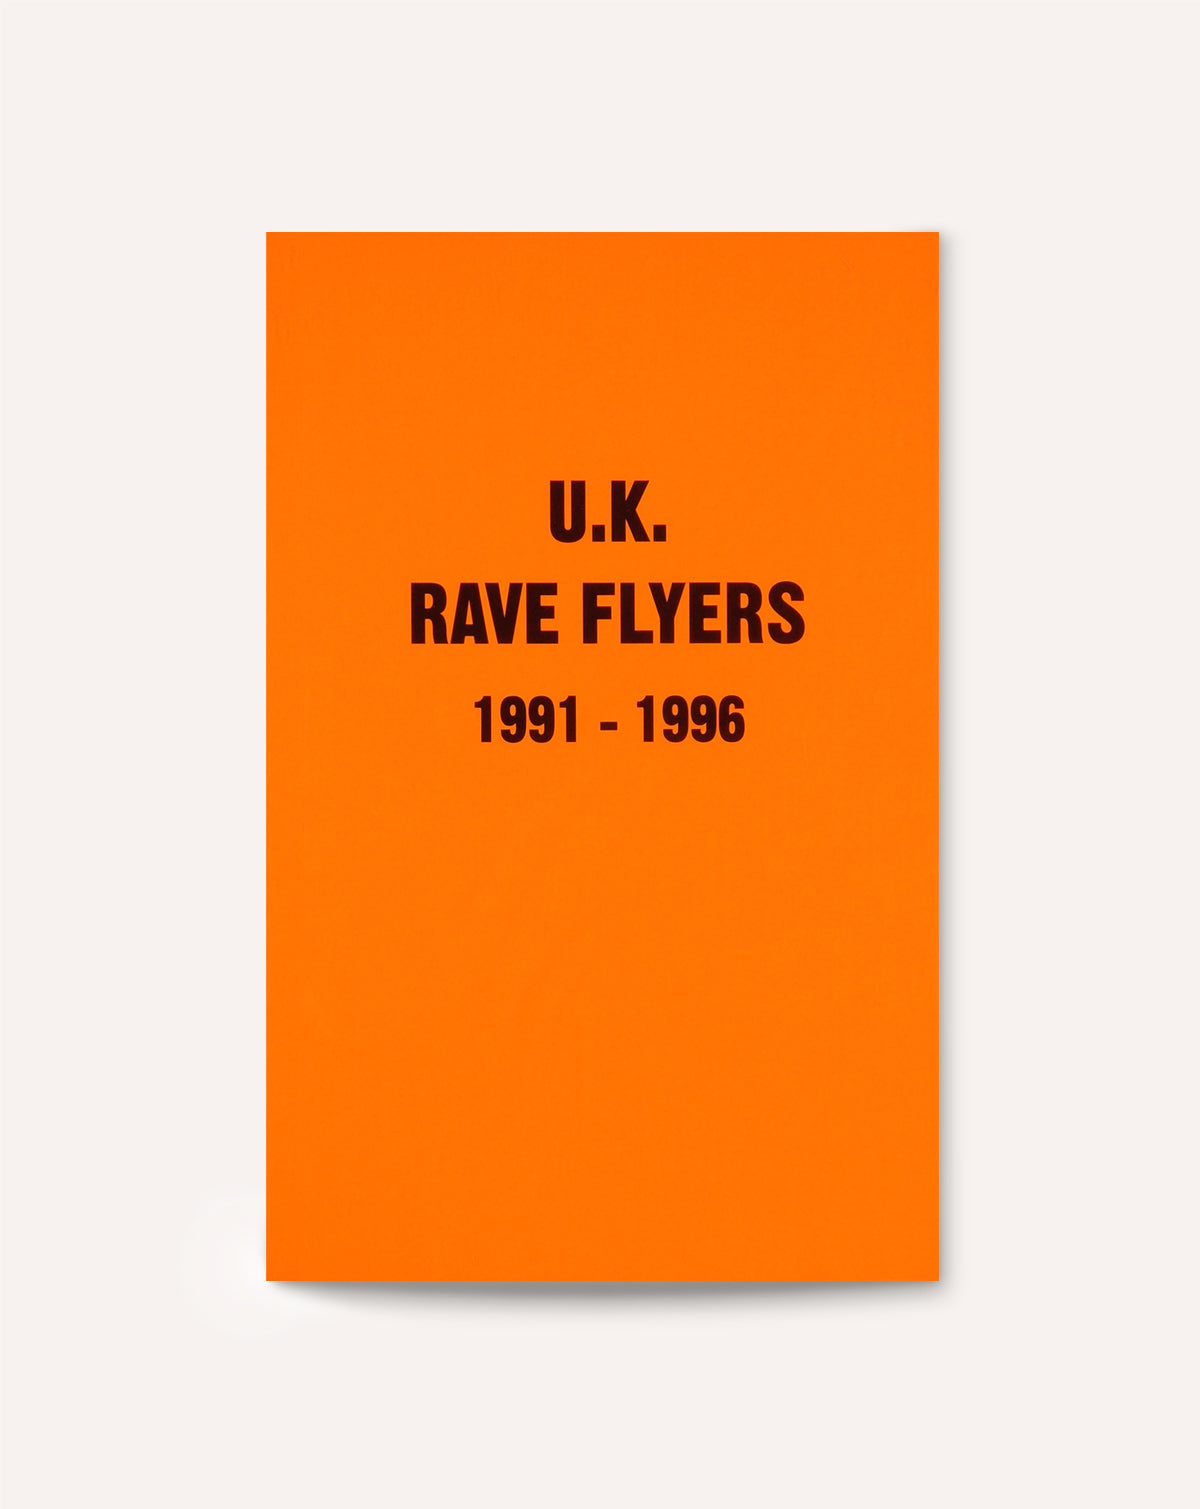 U.K. Rave Flyers: 1991-1996